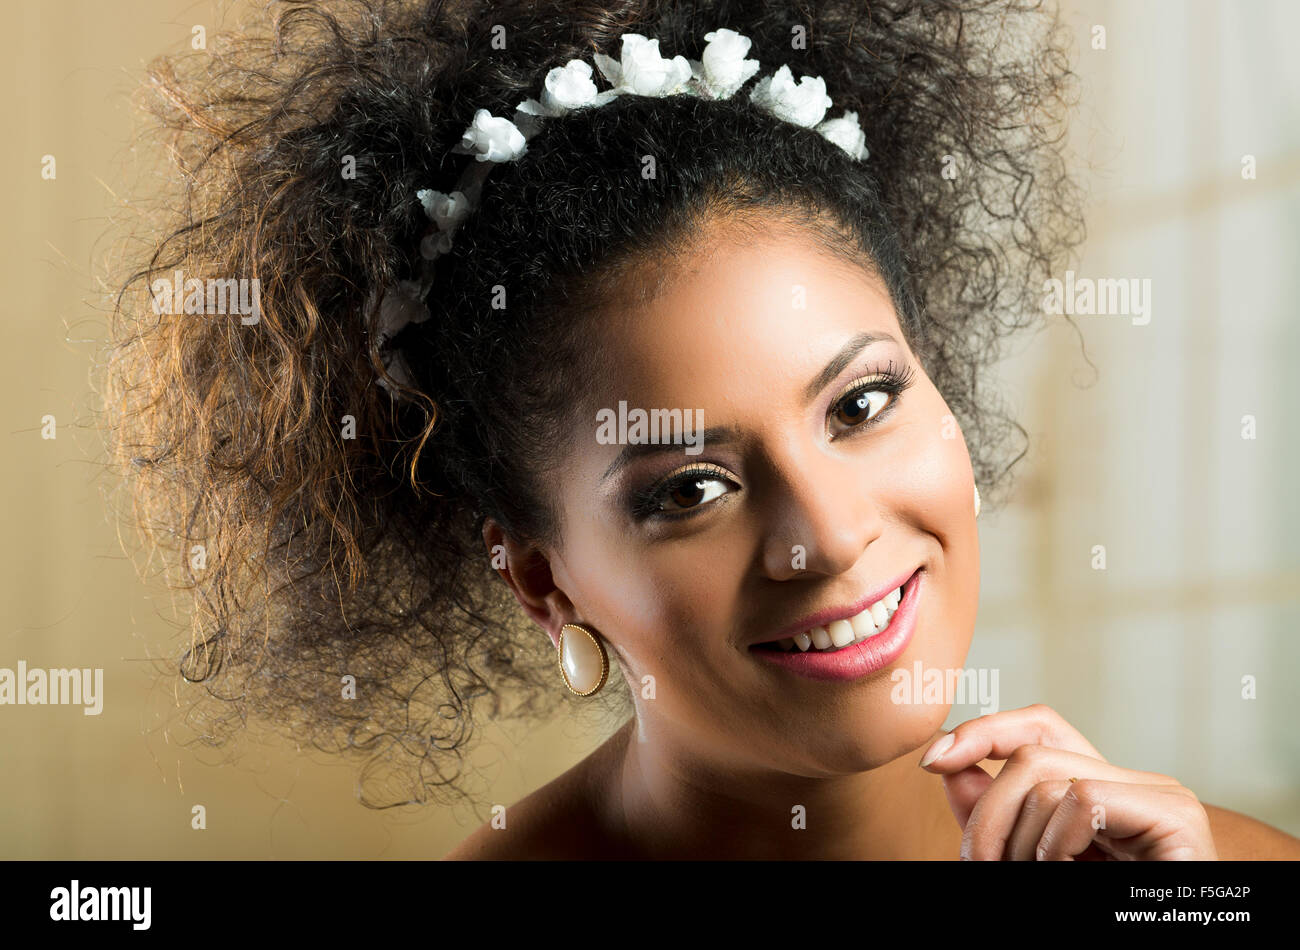 girl hair Hispanic with curly